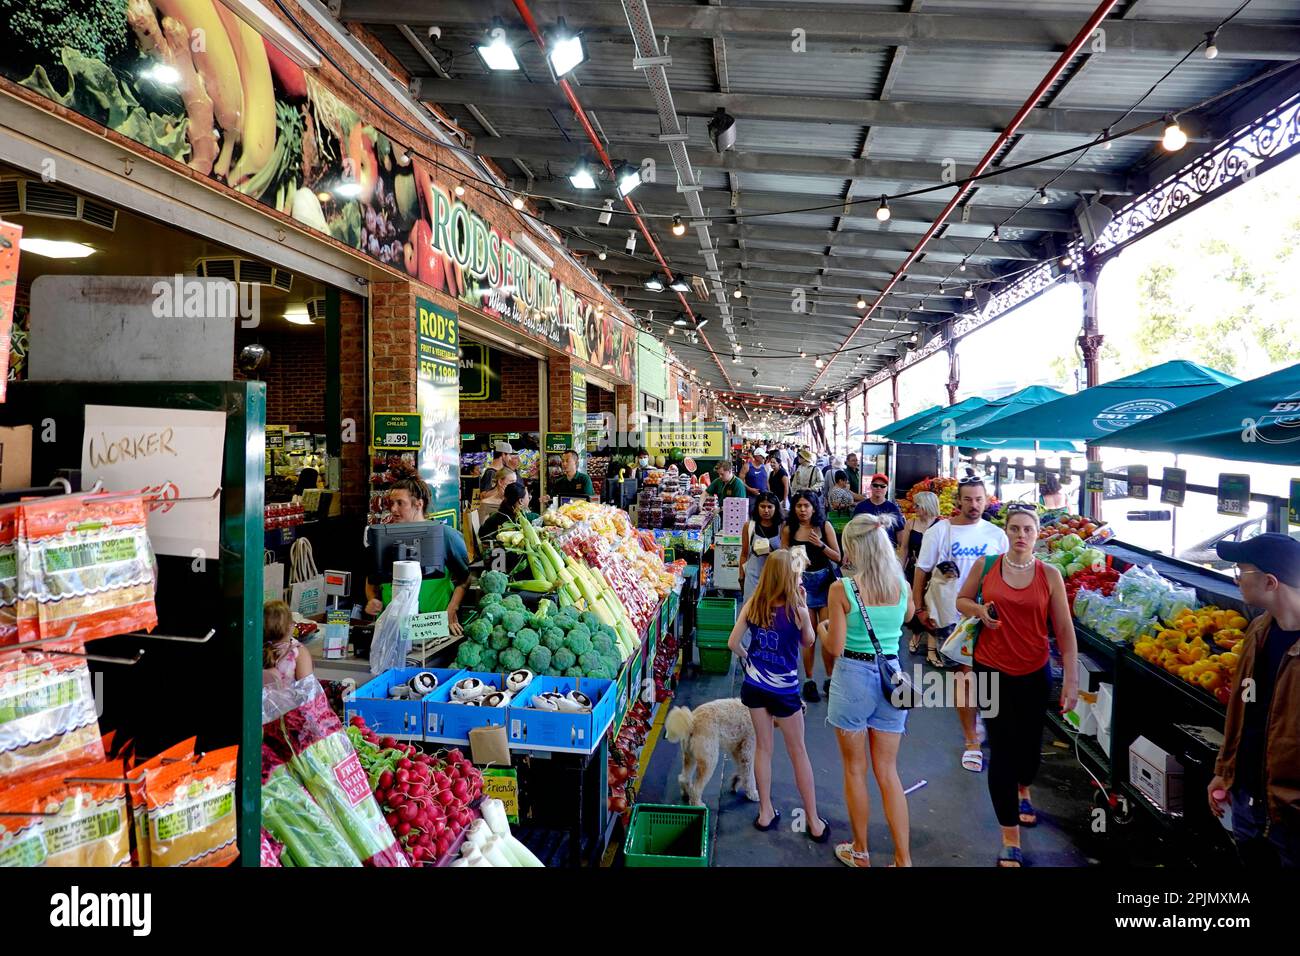 South Melbourne Market, Australia Stock Photo